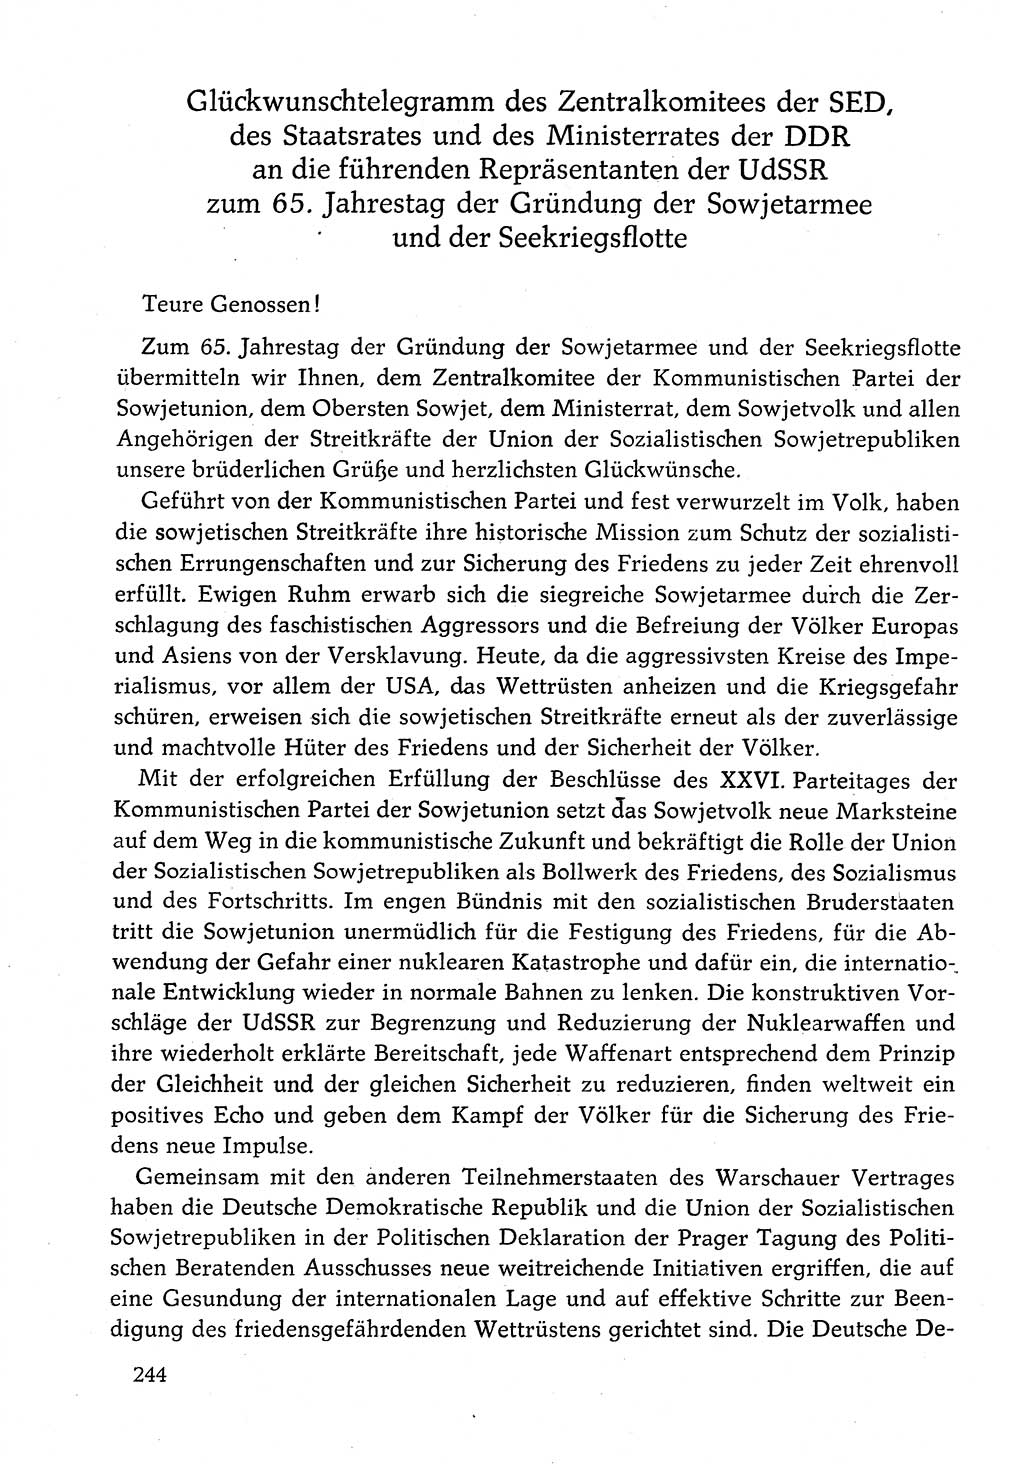 Dokumente der Sozialistischen Einheitspartei Deutschlands (SED) [Deutsche Demokratische Republik (DDR)] 1982-1983, Seite 244 (Dok. SED DDR 1982-1983, S. 244)